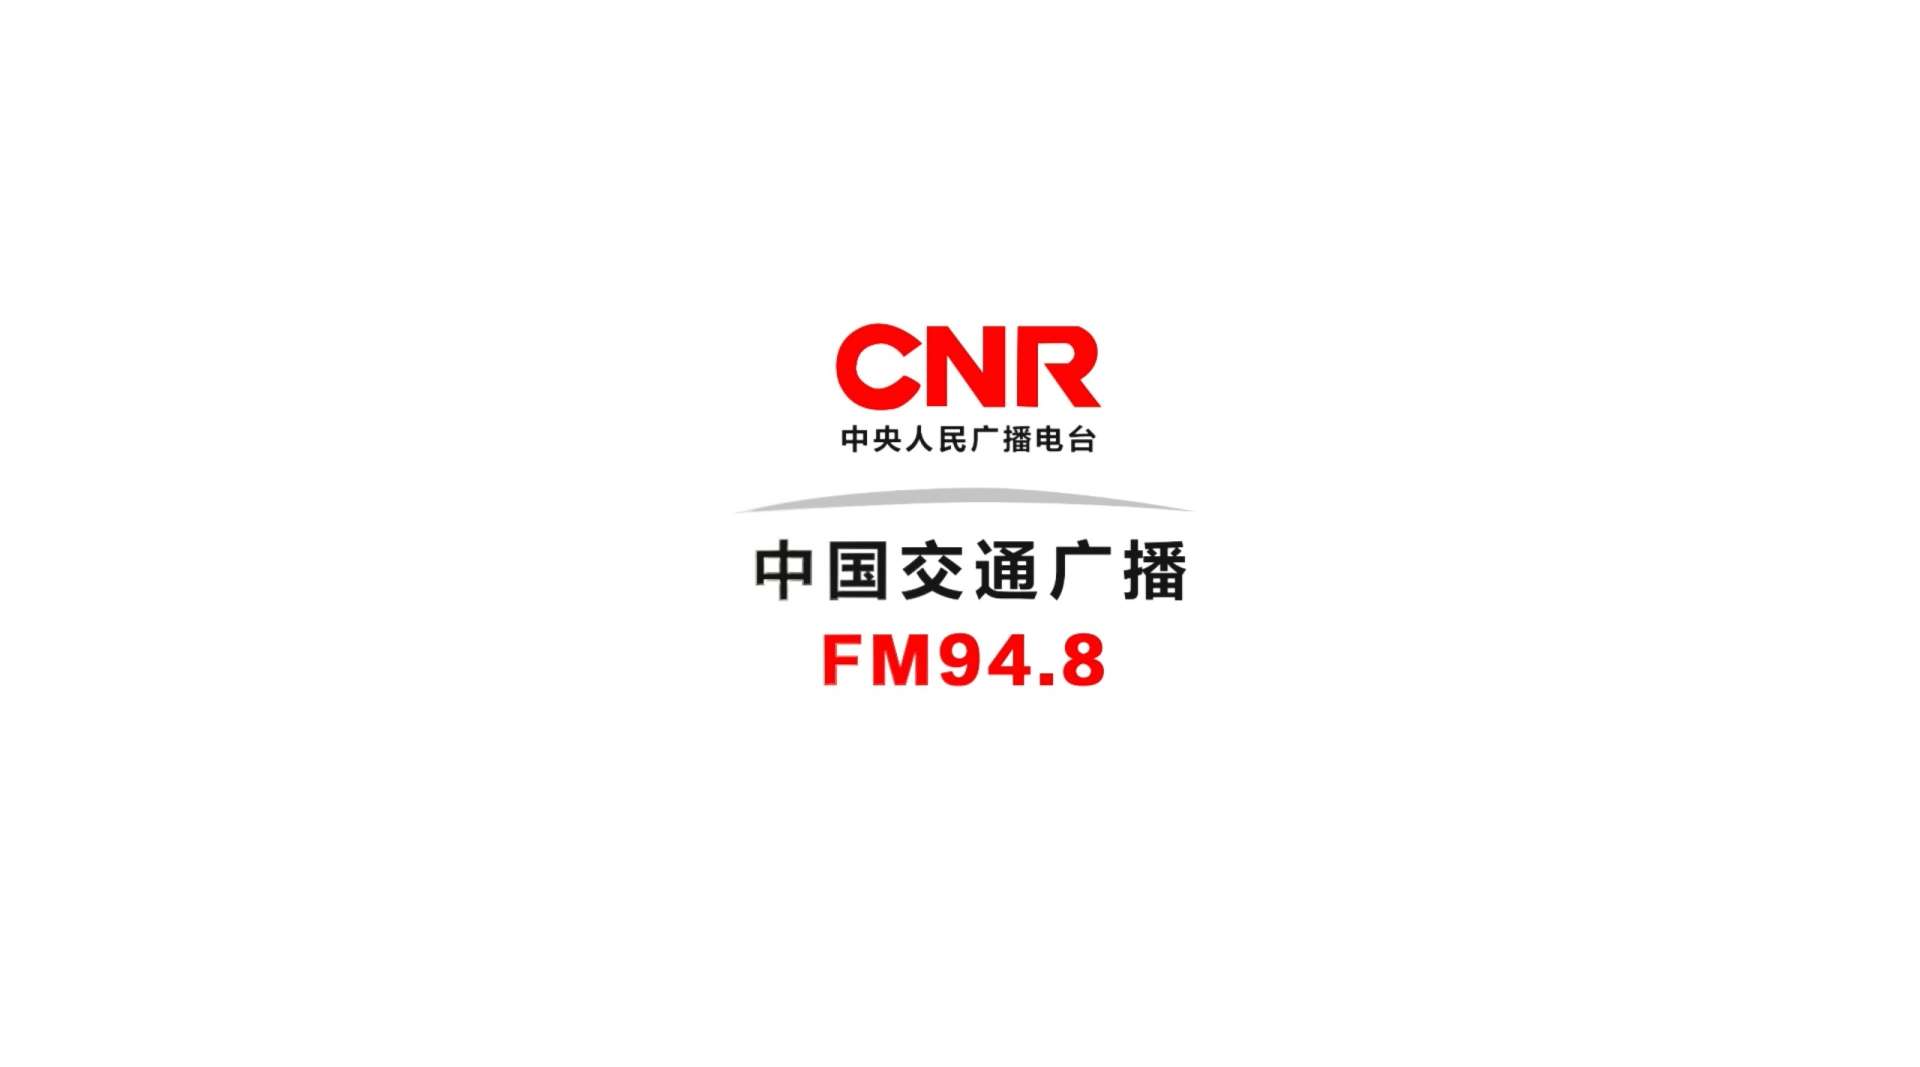 《江湖有你 声入我心》 中国交通广播FM94.8宣传片